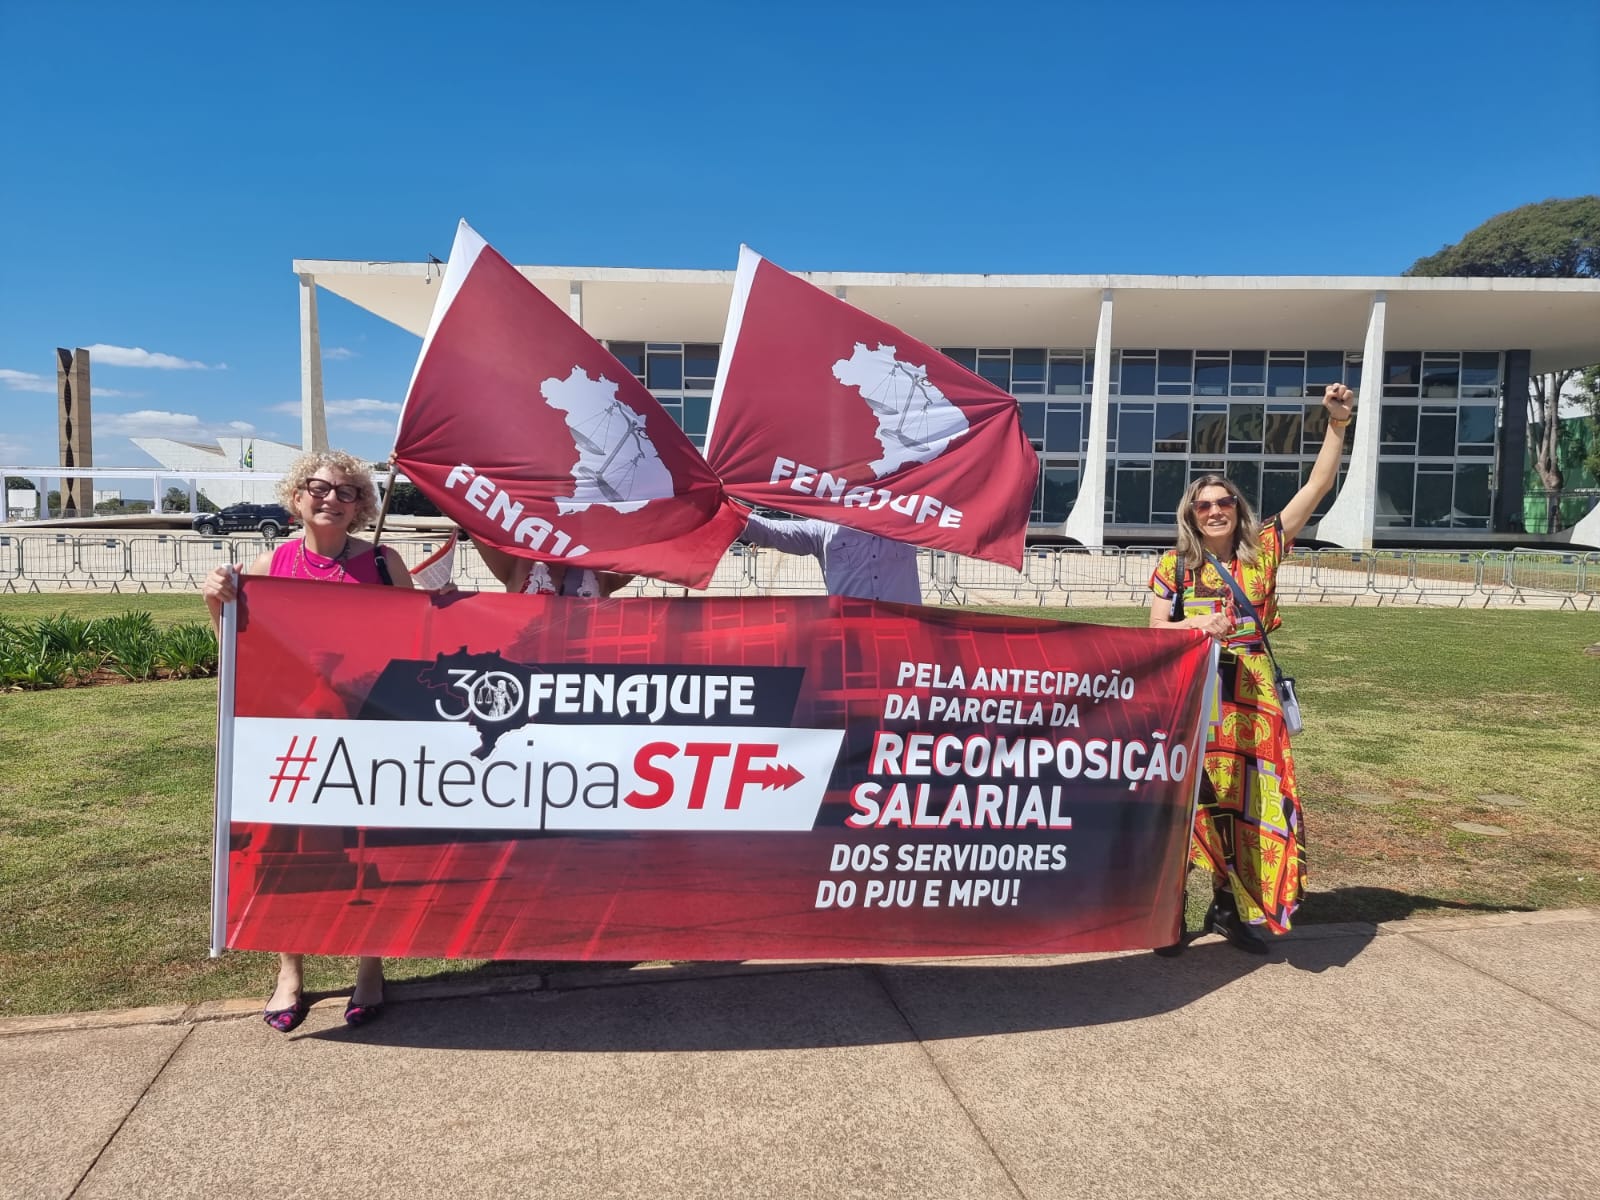 Antecipa STF: Federação realiza atividade e faz trabalho nos órgãos do PJU e MPU em Brasília